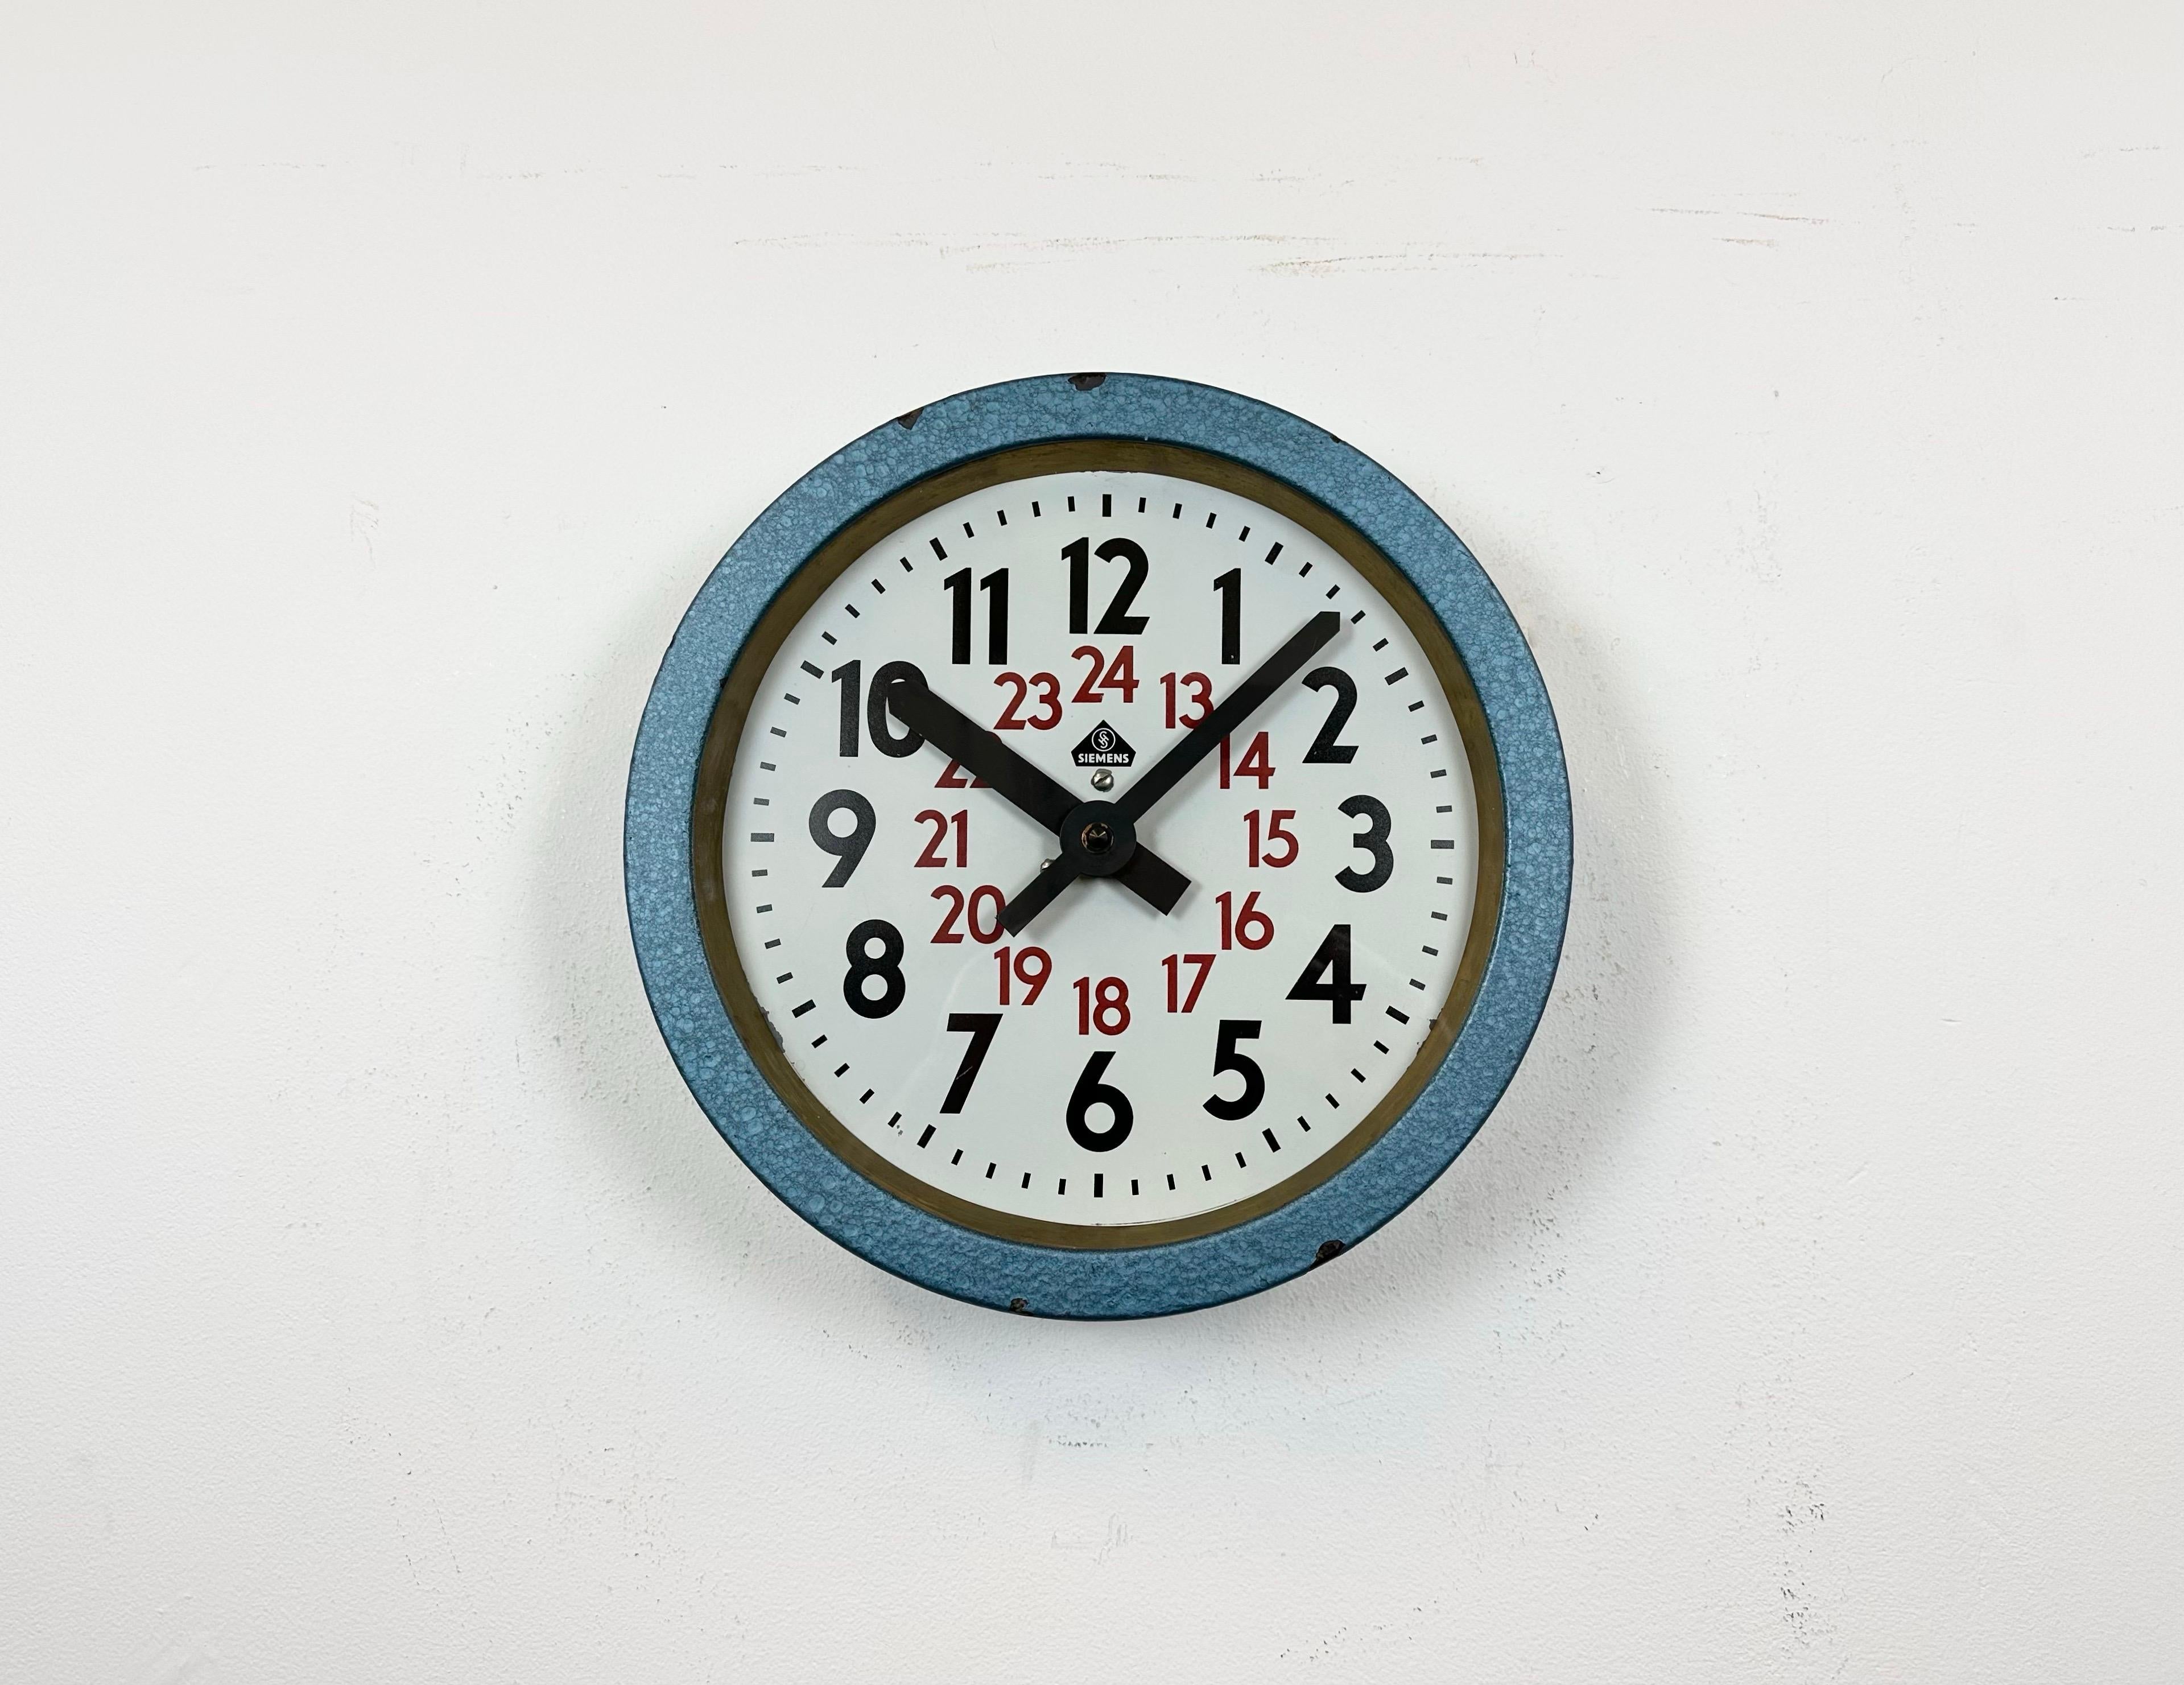 Cette horloge murale a été produite par Siemens en Allemagne dans les années 1960. Elle se compose d'un cadre métallique peint au marteau bleu, d'un cadran métallique et d'un couvercle en verre transparent. L'ancienne horloge esclave a été convertie